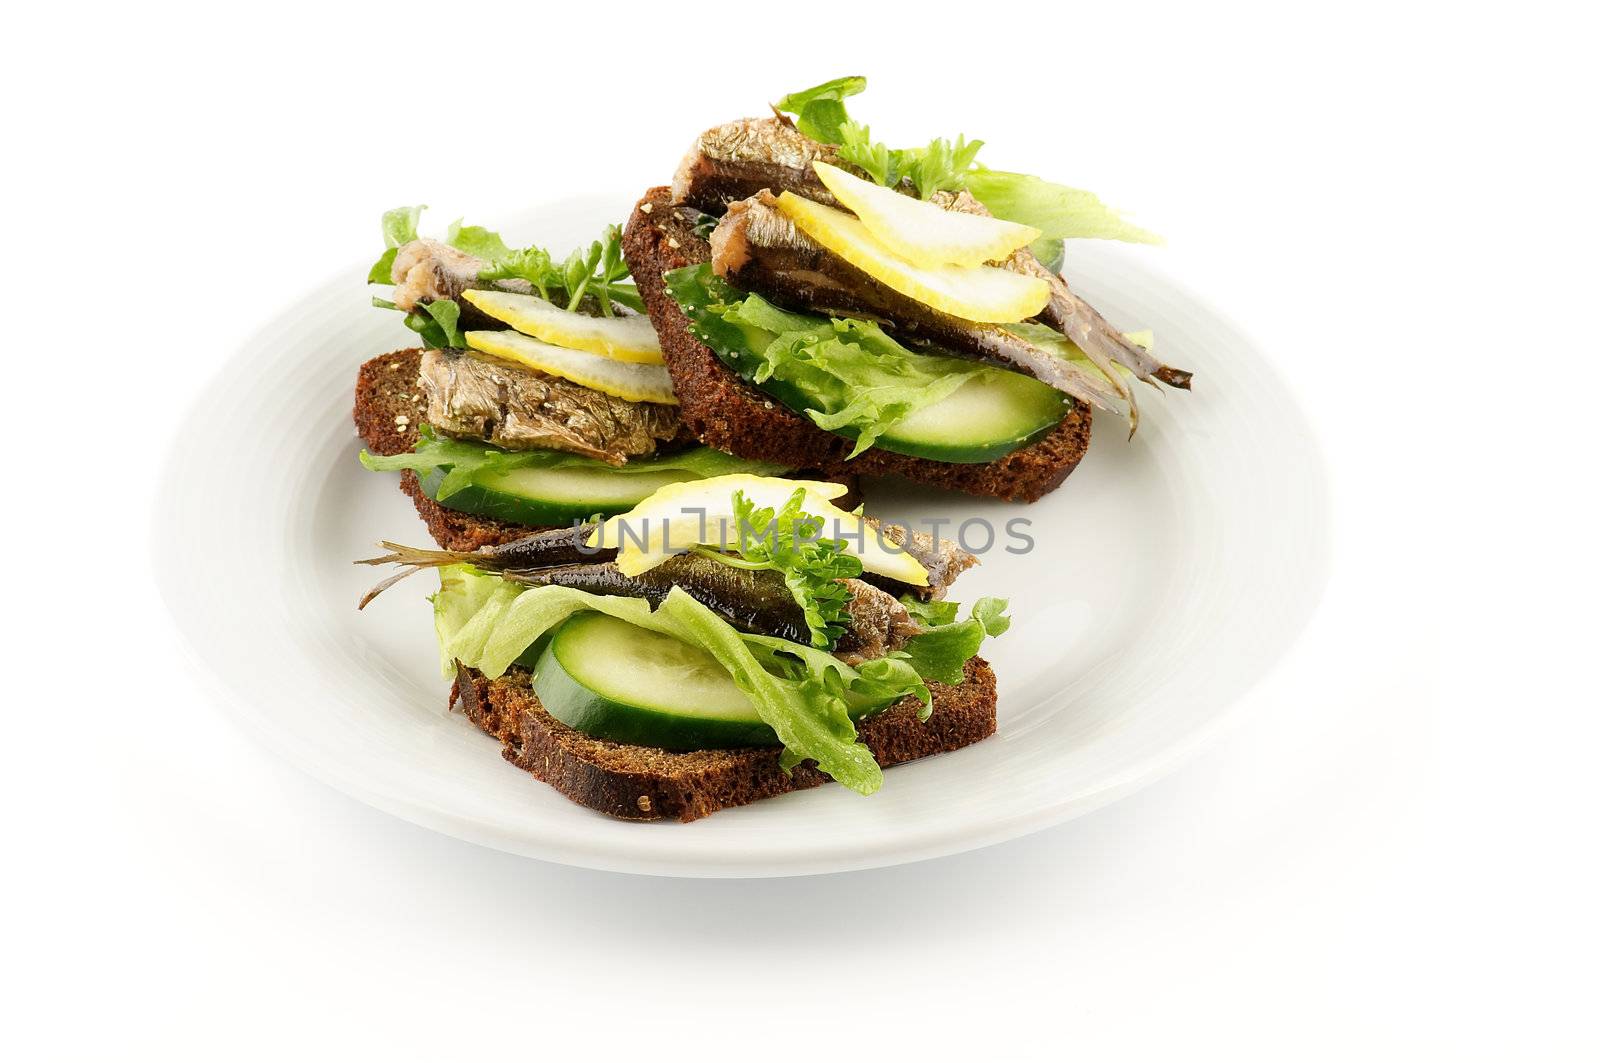 Smoked sardines sandwich by zhekos